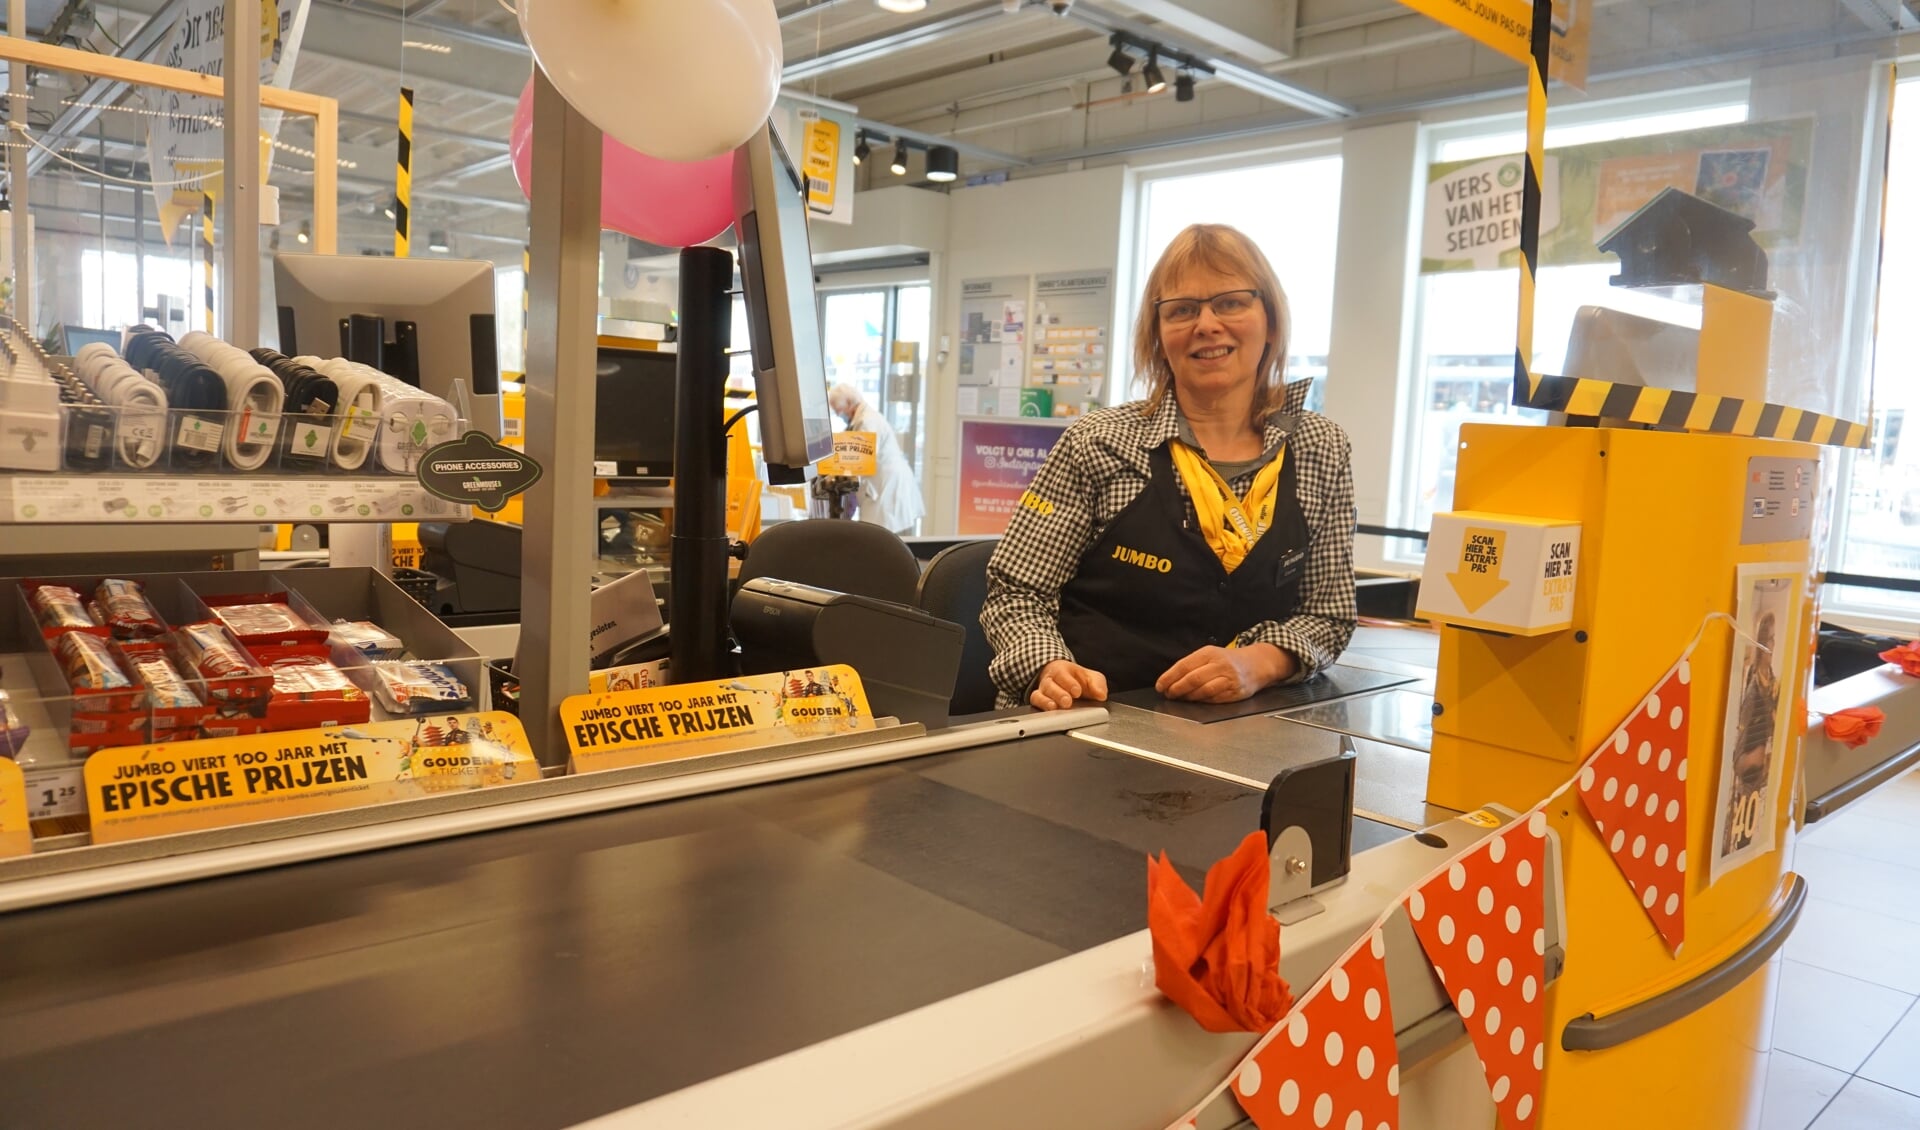 moord ader Vertrouwen op Kassa versierd: Corrie veertig jaar in de supermarkt -  DeMooiSonenBreugelKrant